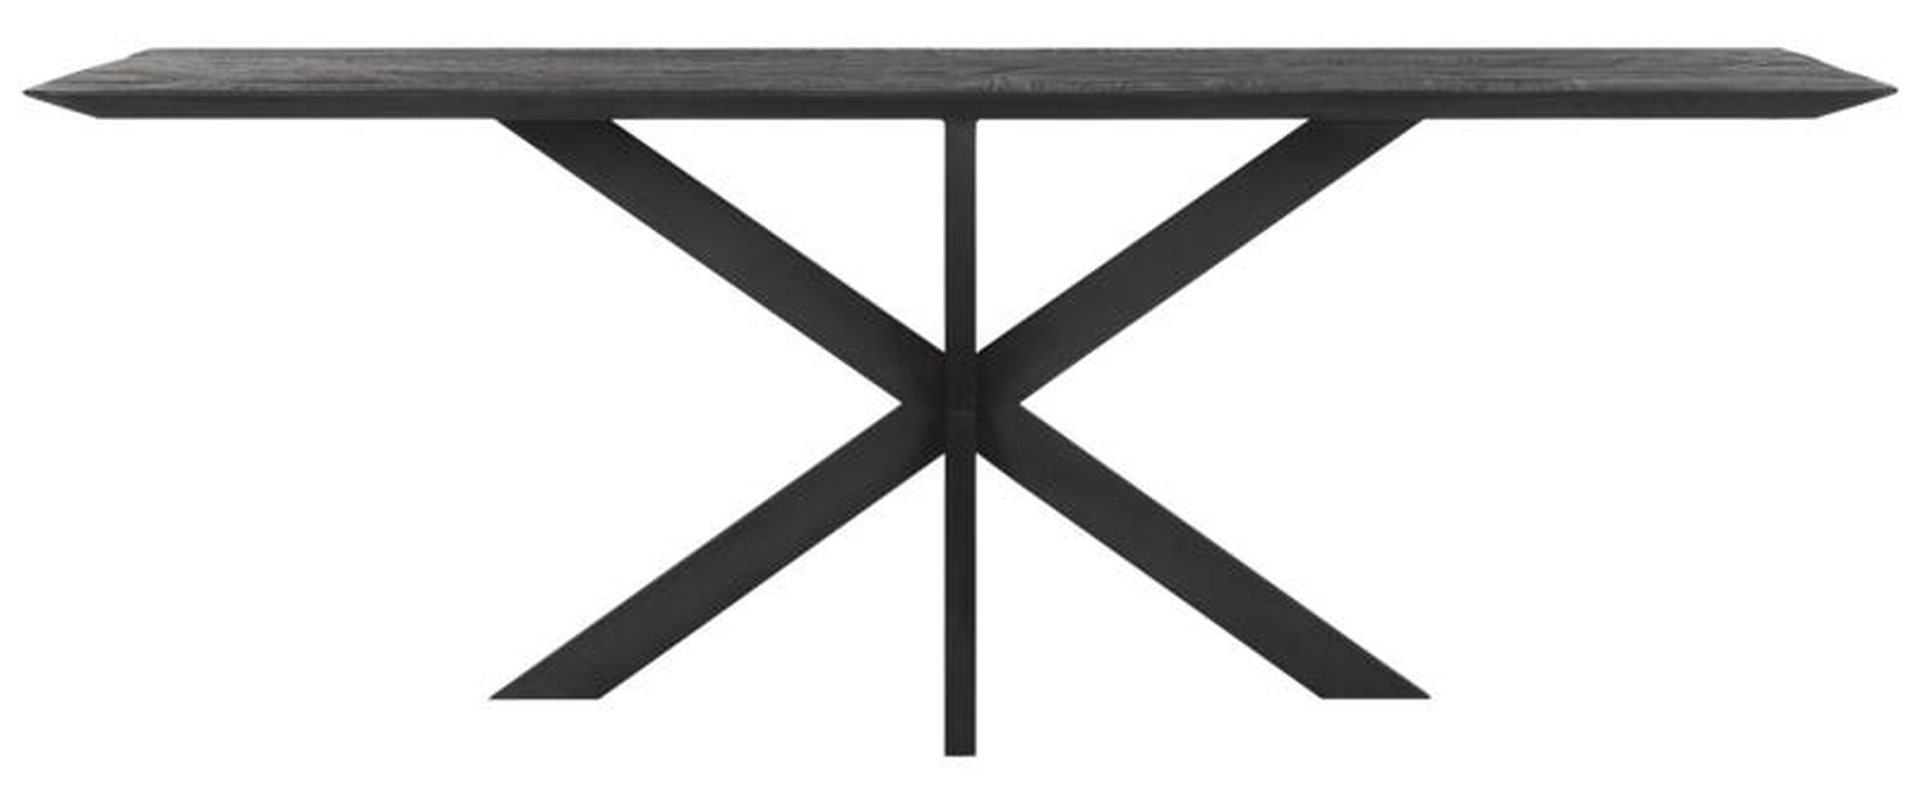 Der Esstisch Curves überzeugt mit seinem modernem aber auch massivem Design. Gefertigt wurde der Tisch aus recyceltem Teakholz, welches einen schwarzen Farbton besitzt. Das Gestell ist aus Metall und ist Schwarz. Der Tisch hat eine Länge von 210 cm.